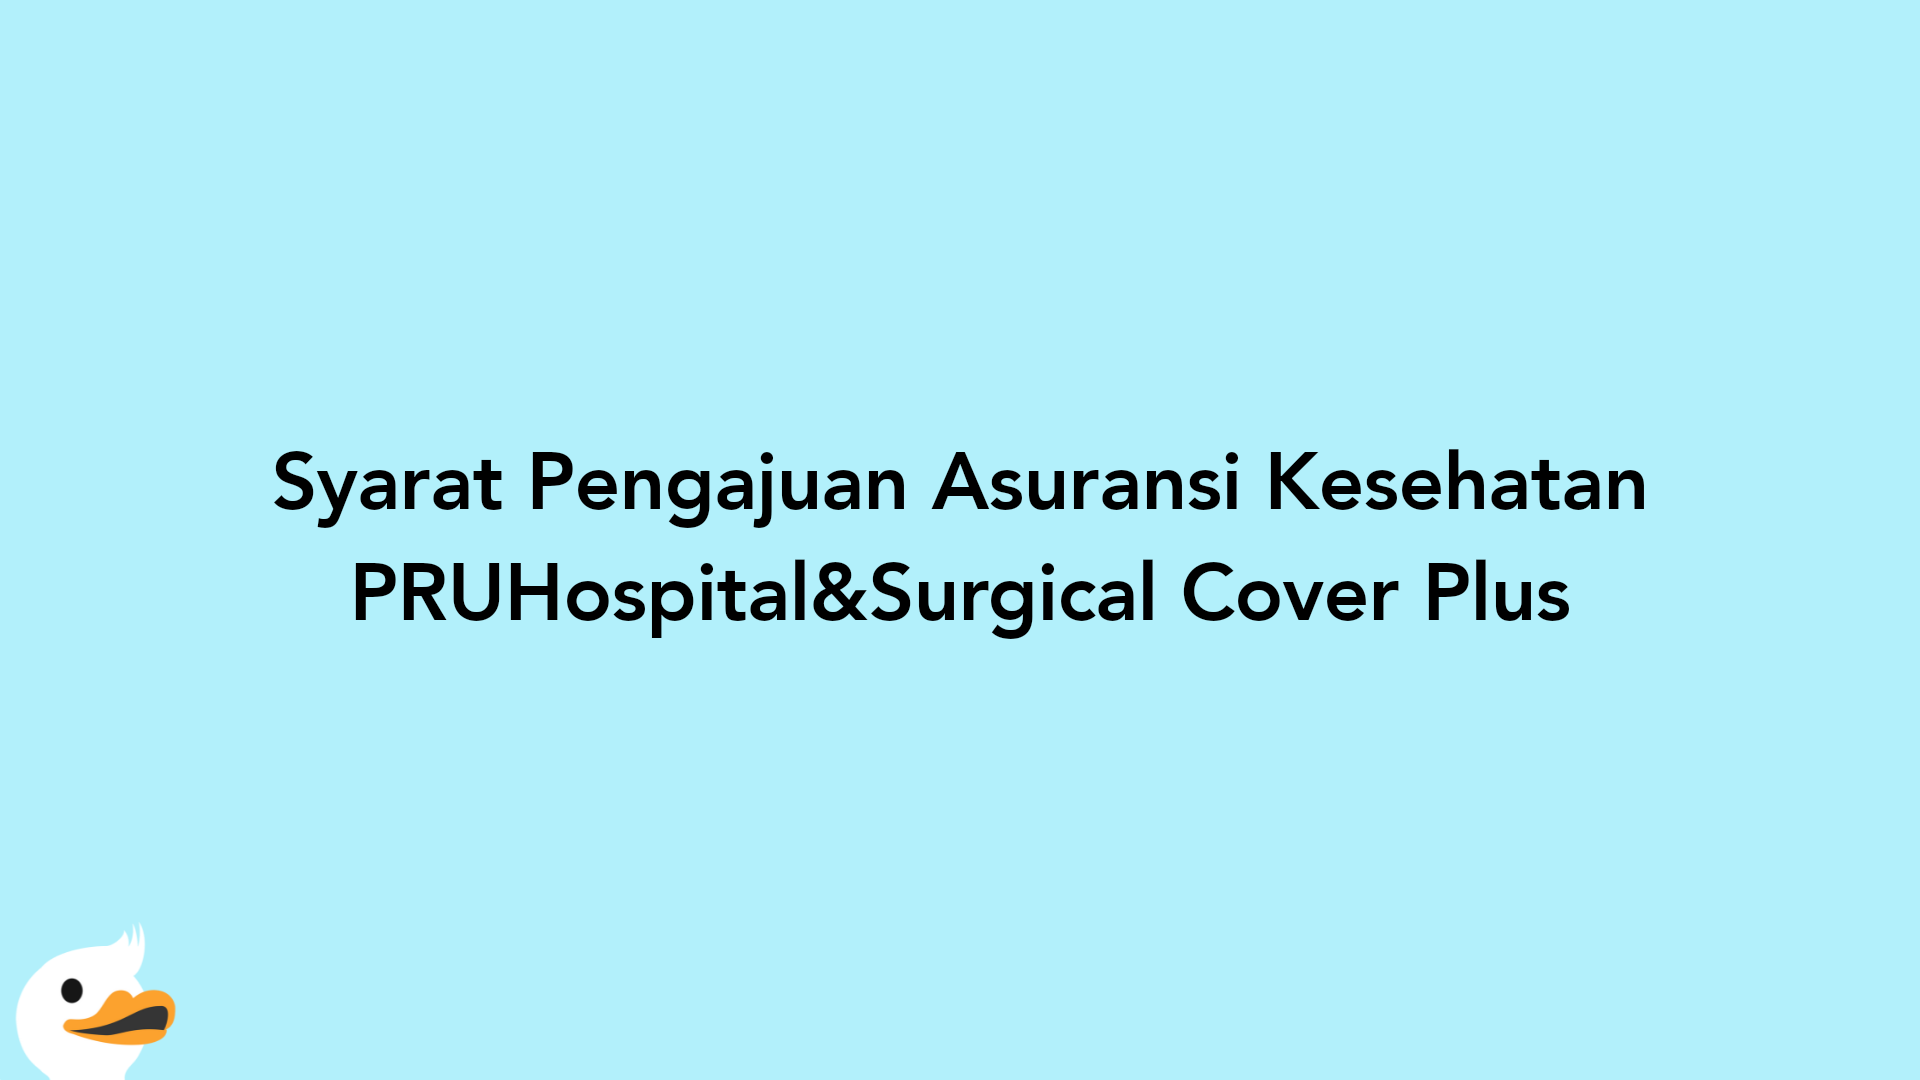 Syarat Pengajuan Asuransi Kesehatan PRUHospital&Surgical Cover Plus